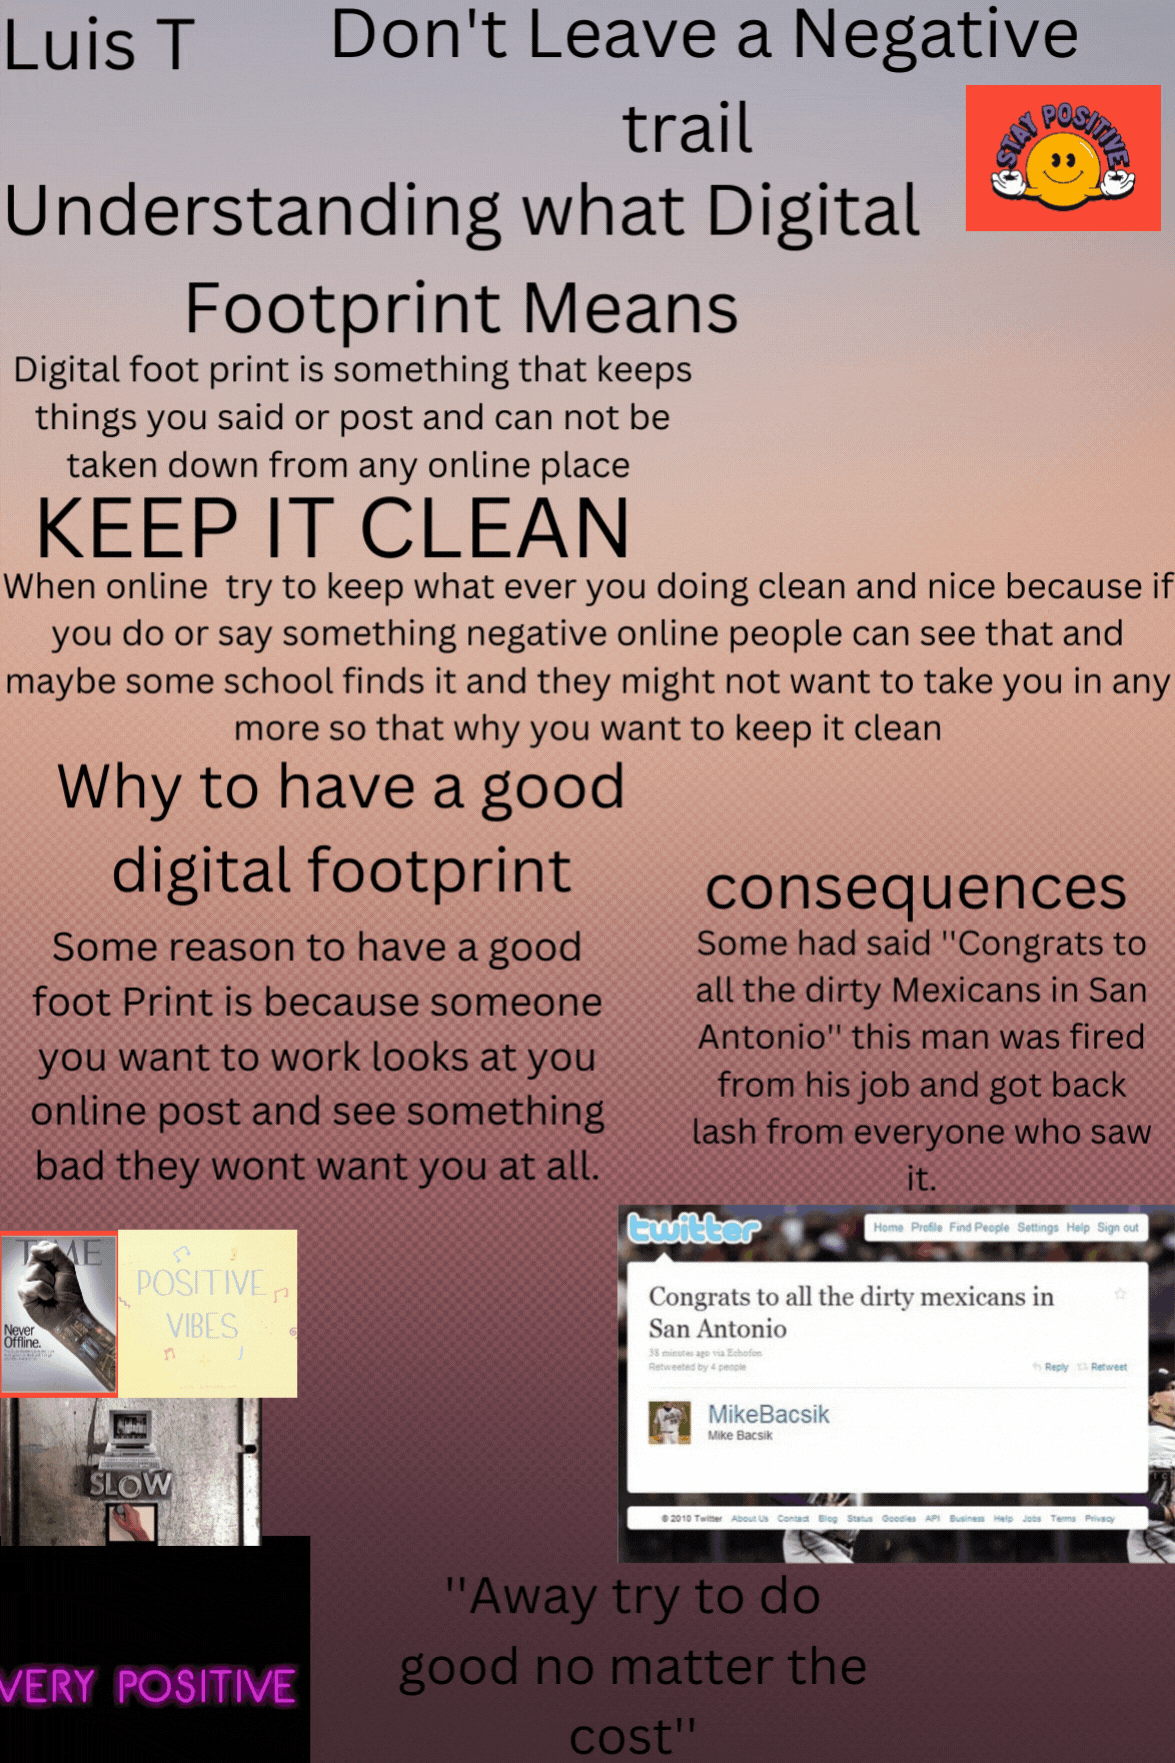 Digital Footprint Poster - Luis T.